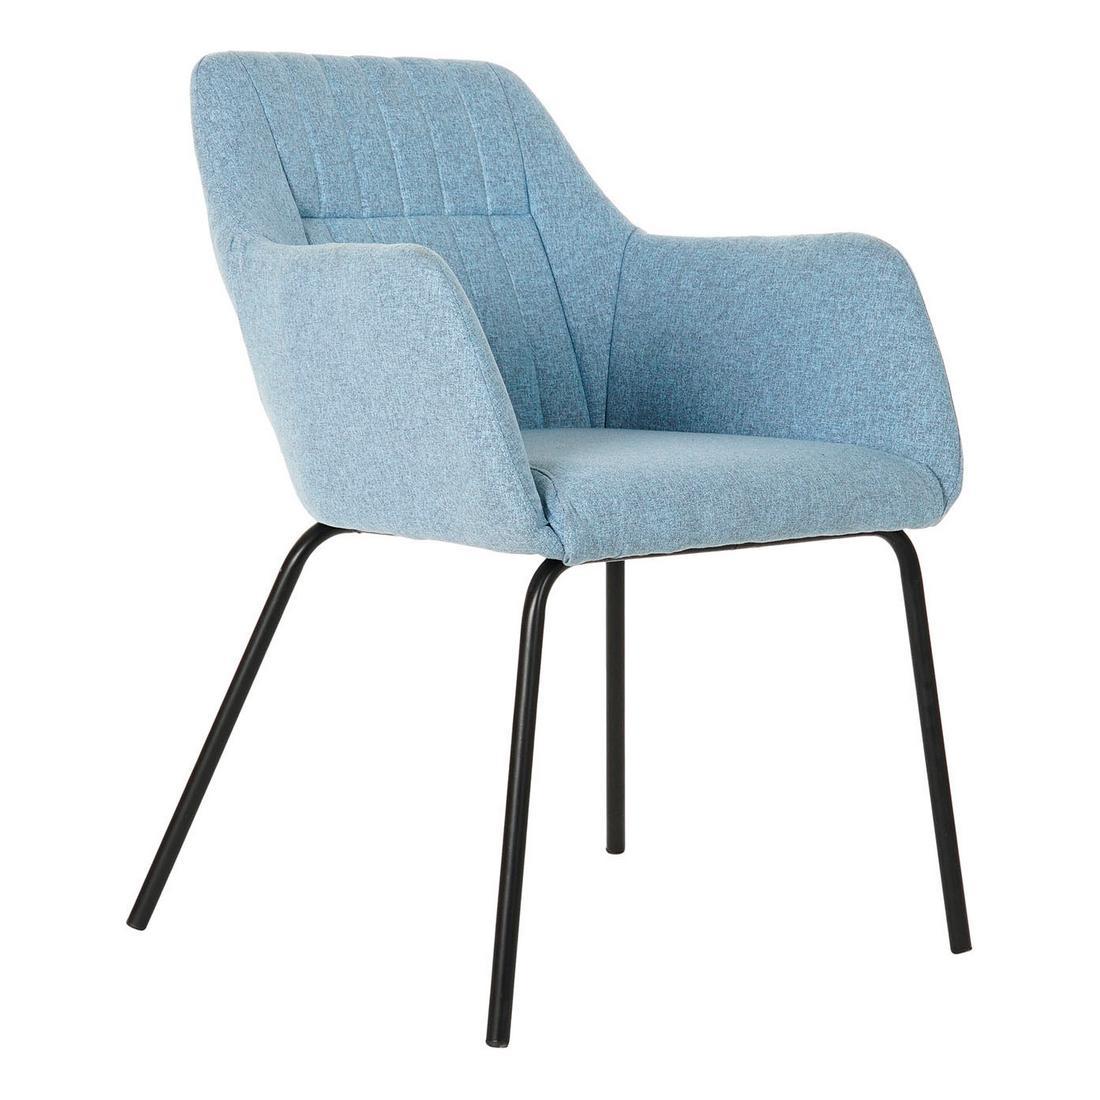 Sky blue contemporary chair 